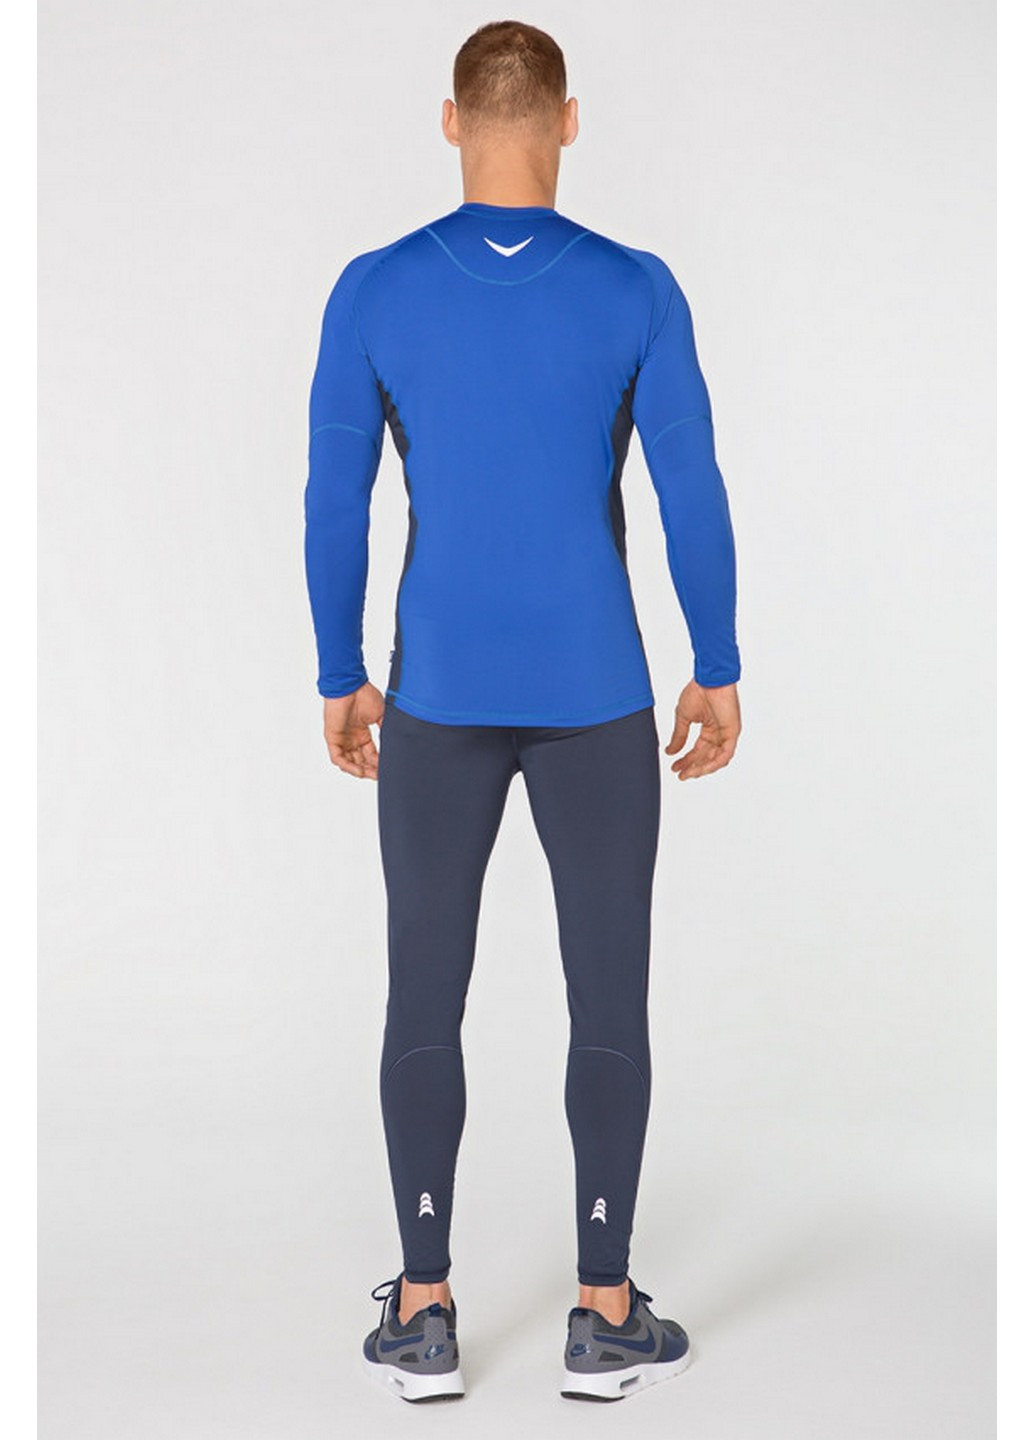 Сіро-синій демісезонний спортивний костюм для бігу Radical